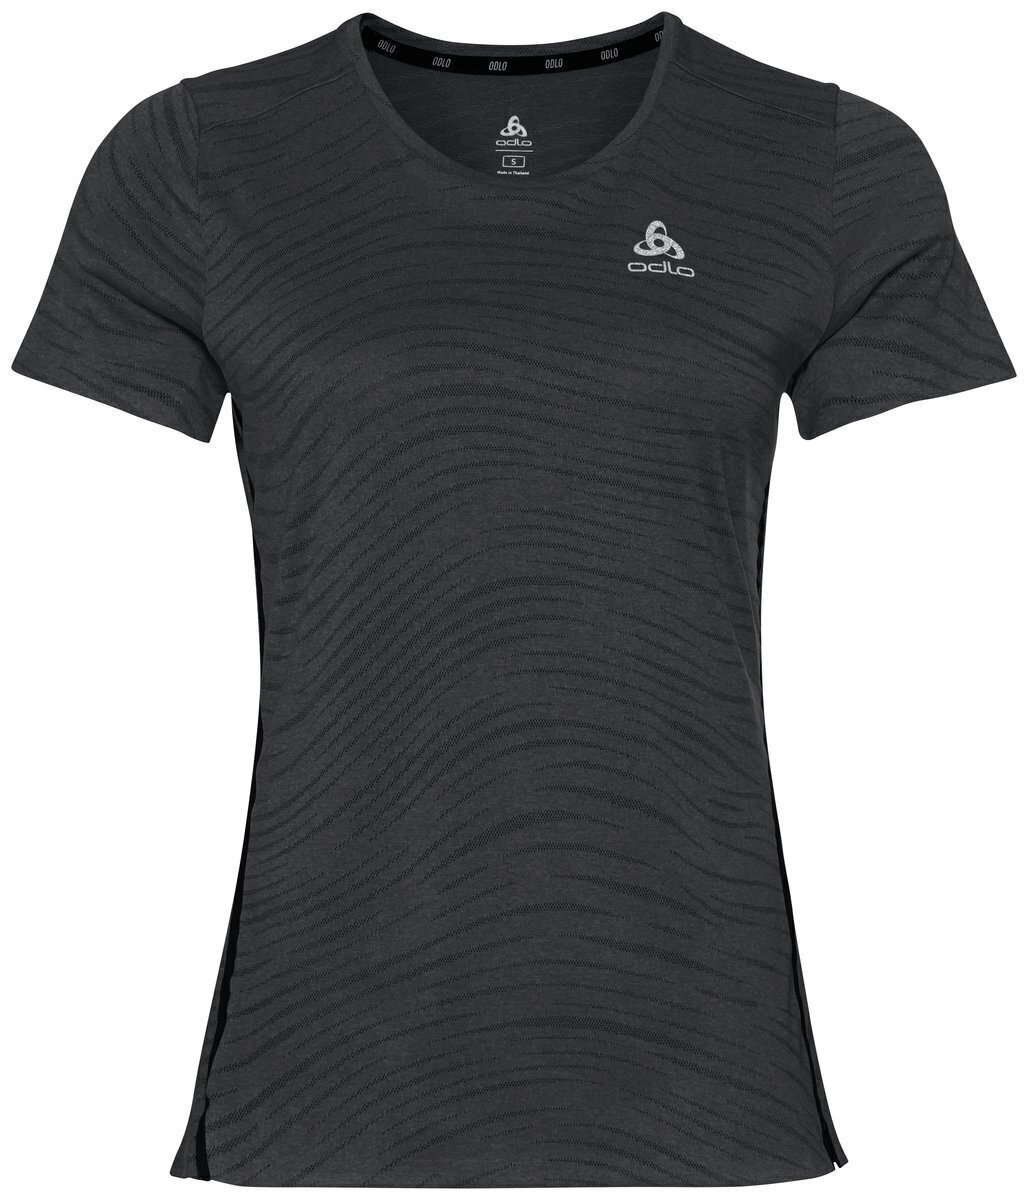 Κοντομάνικη Μπλούζα Τρεξίματος Odlo Zeroweight Engineered Chill-Tec T-Shirt Black Melange M Κοντομάνικη Μπλούζα Τρεξίματος